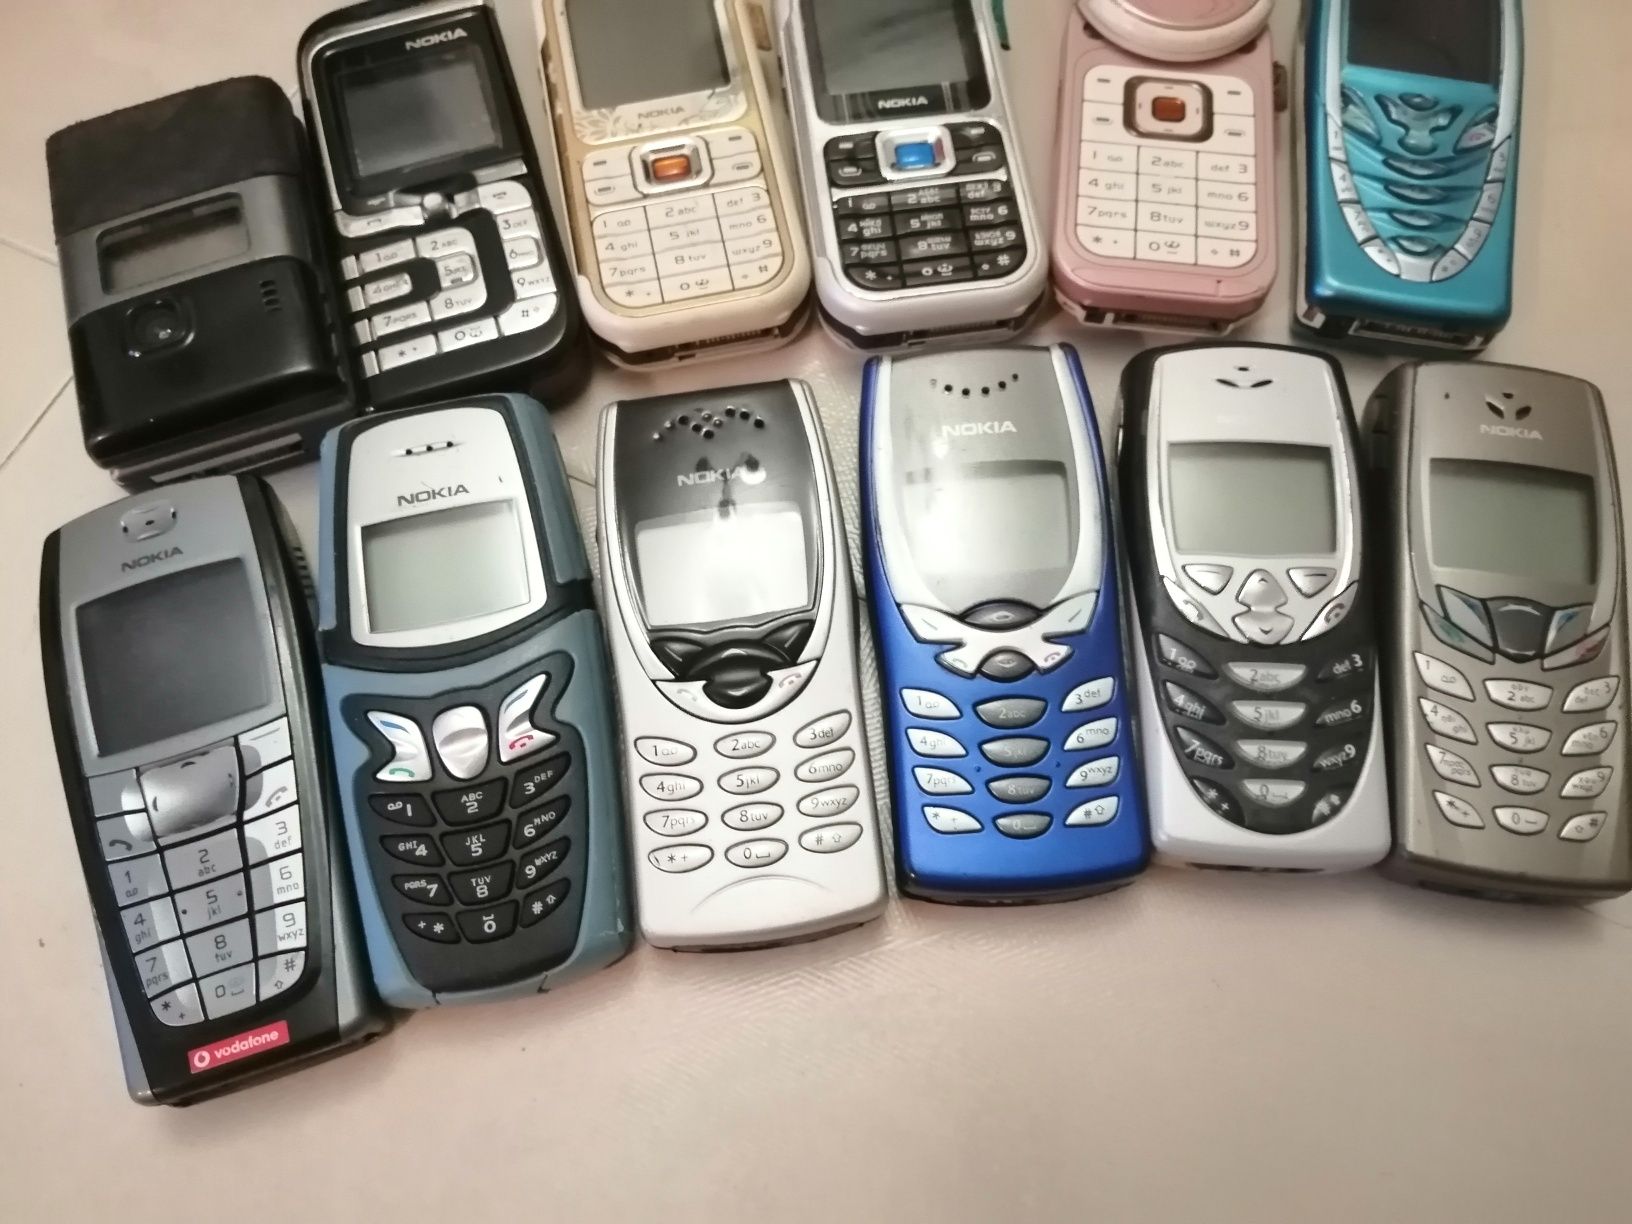 Nokia 6600,3650,6310,7200,7260,7360,7373,7210,6220,5210,8210,8250,8310